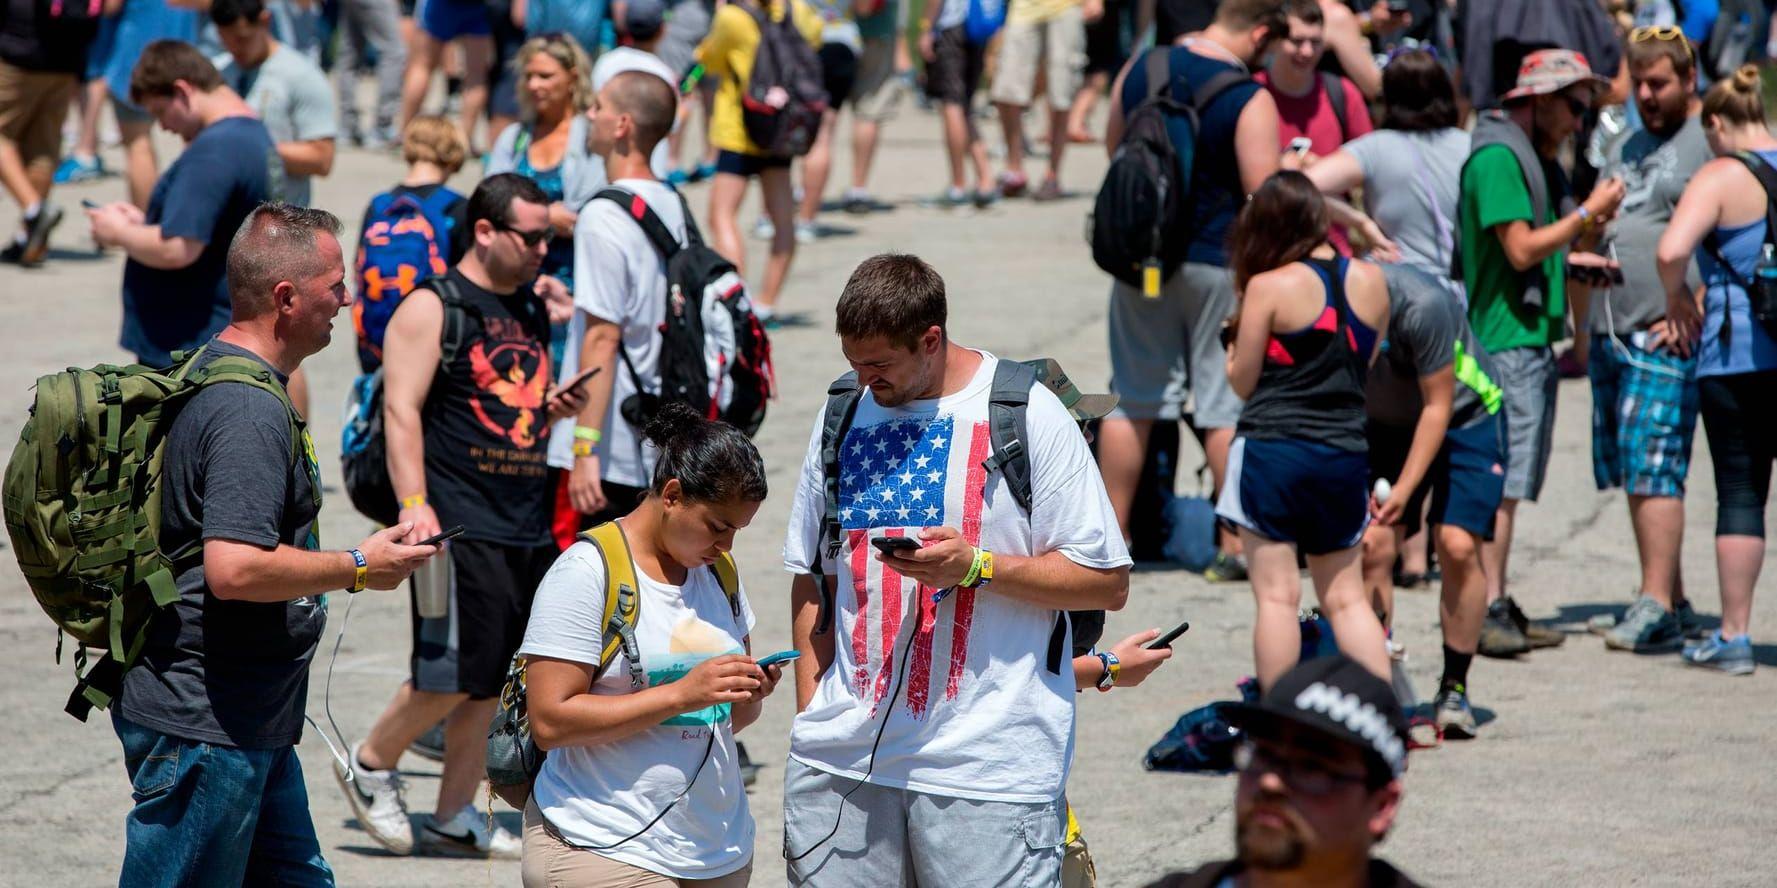 Festivalbesökare försökte spela Pokémon Go i Chicago på lördagen.